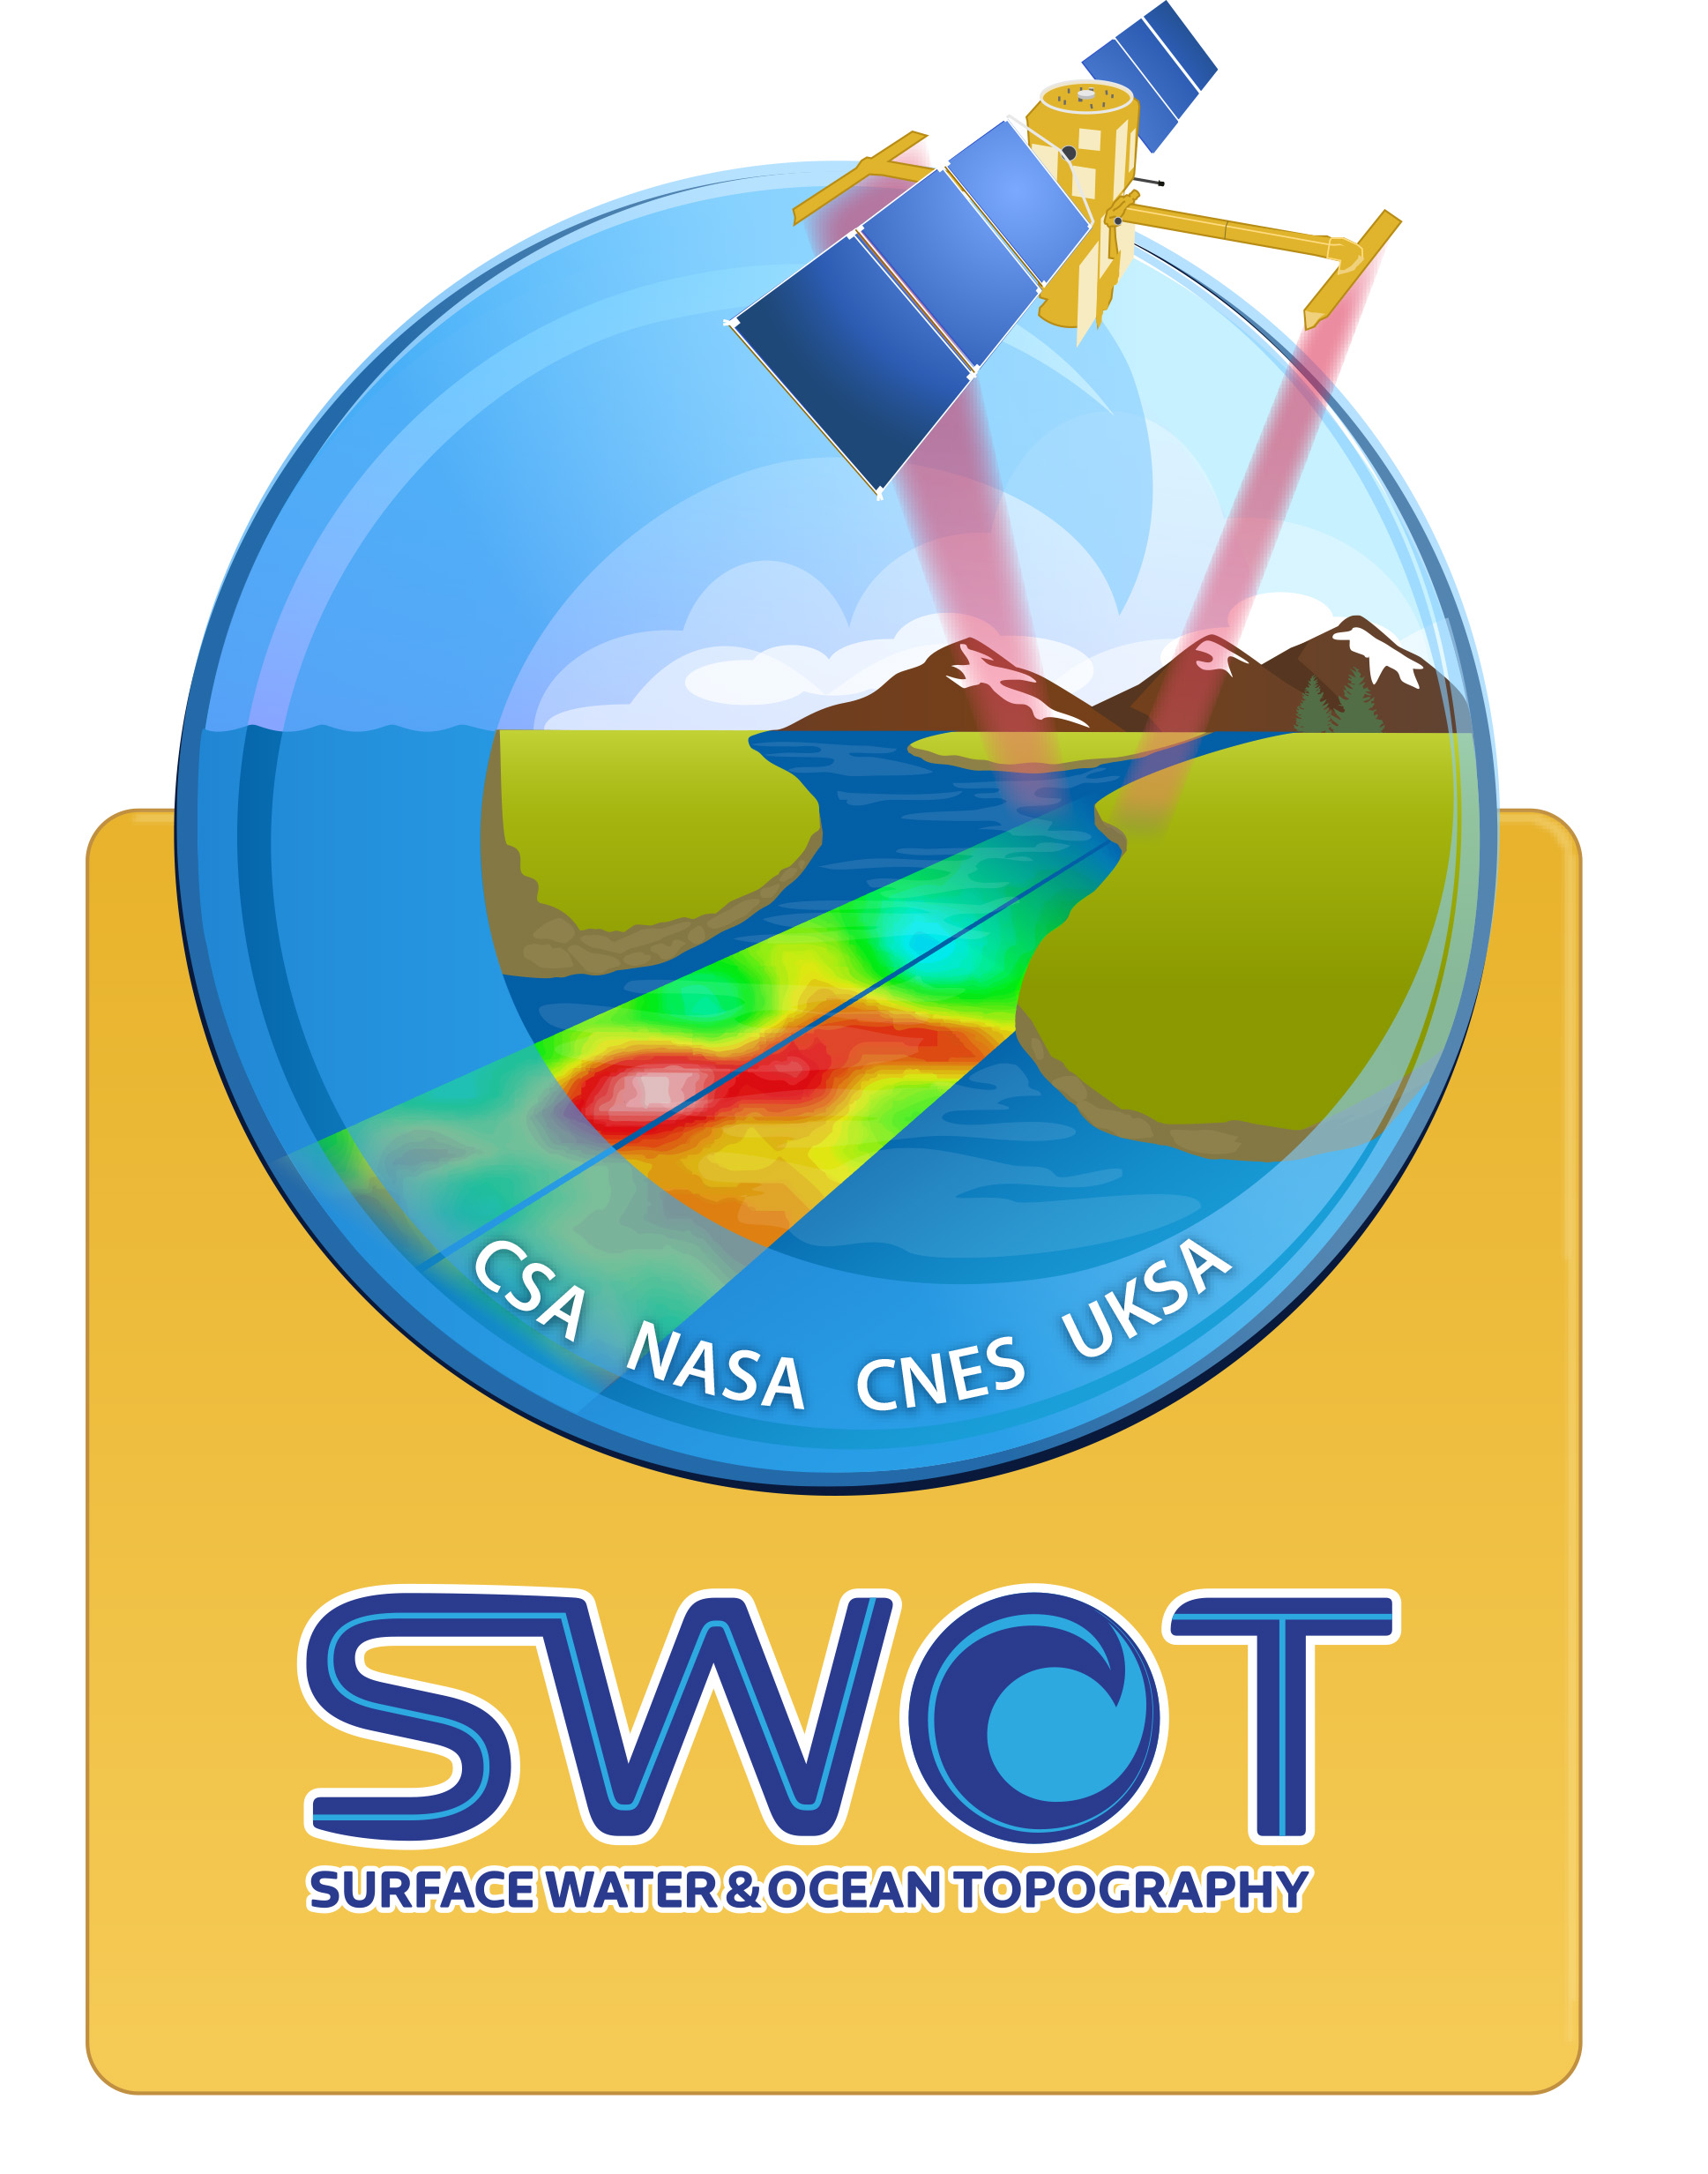 Emblem for the SWOT mission.